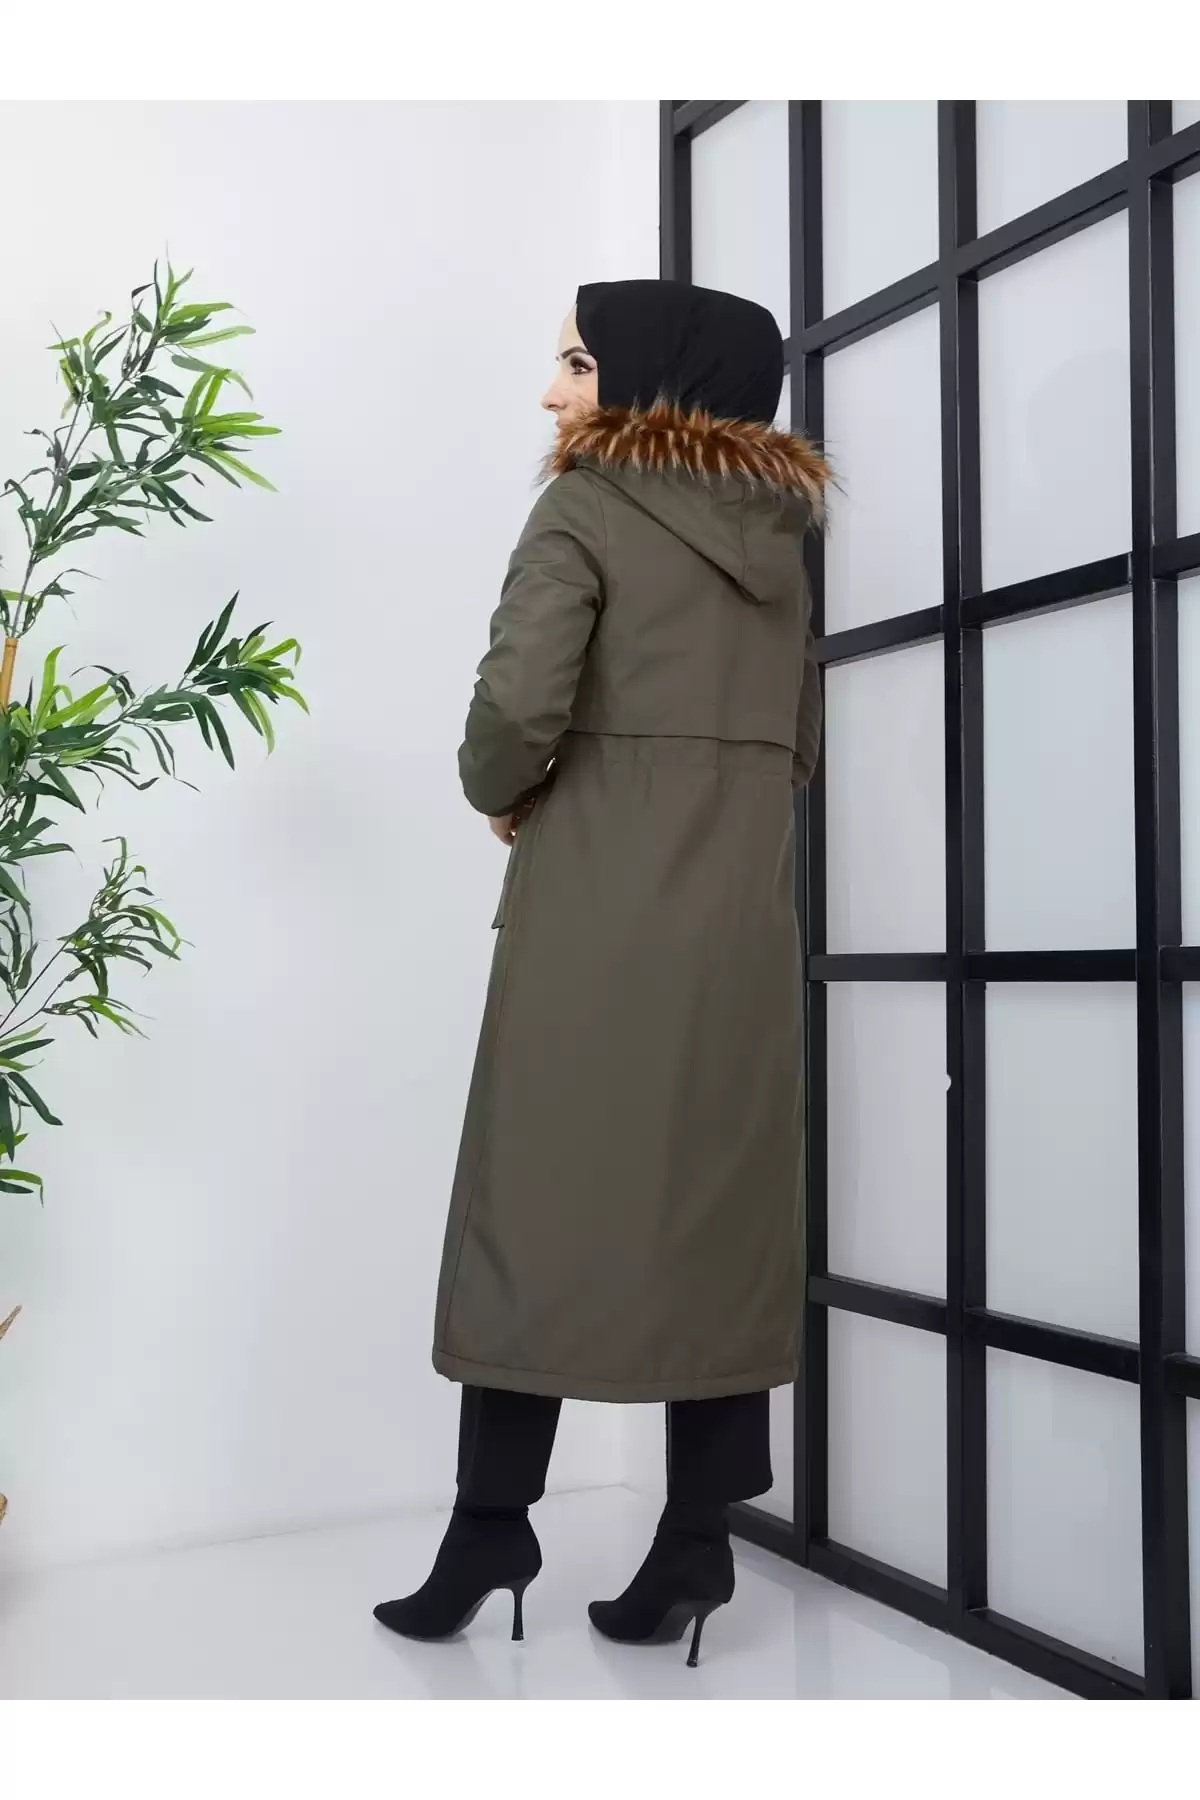 ژاکت ضد آب و ضد باد با خز داخلی جیب Epaulette - خاکی برند   Qenz(قنز) به رنگ  خاکی مدل  زمستانی